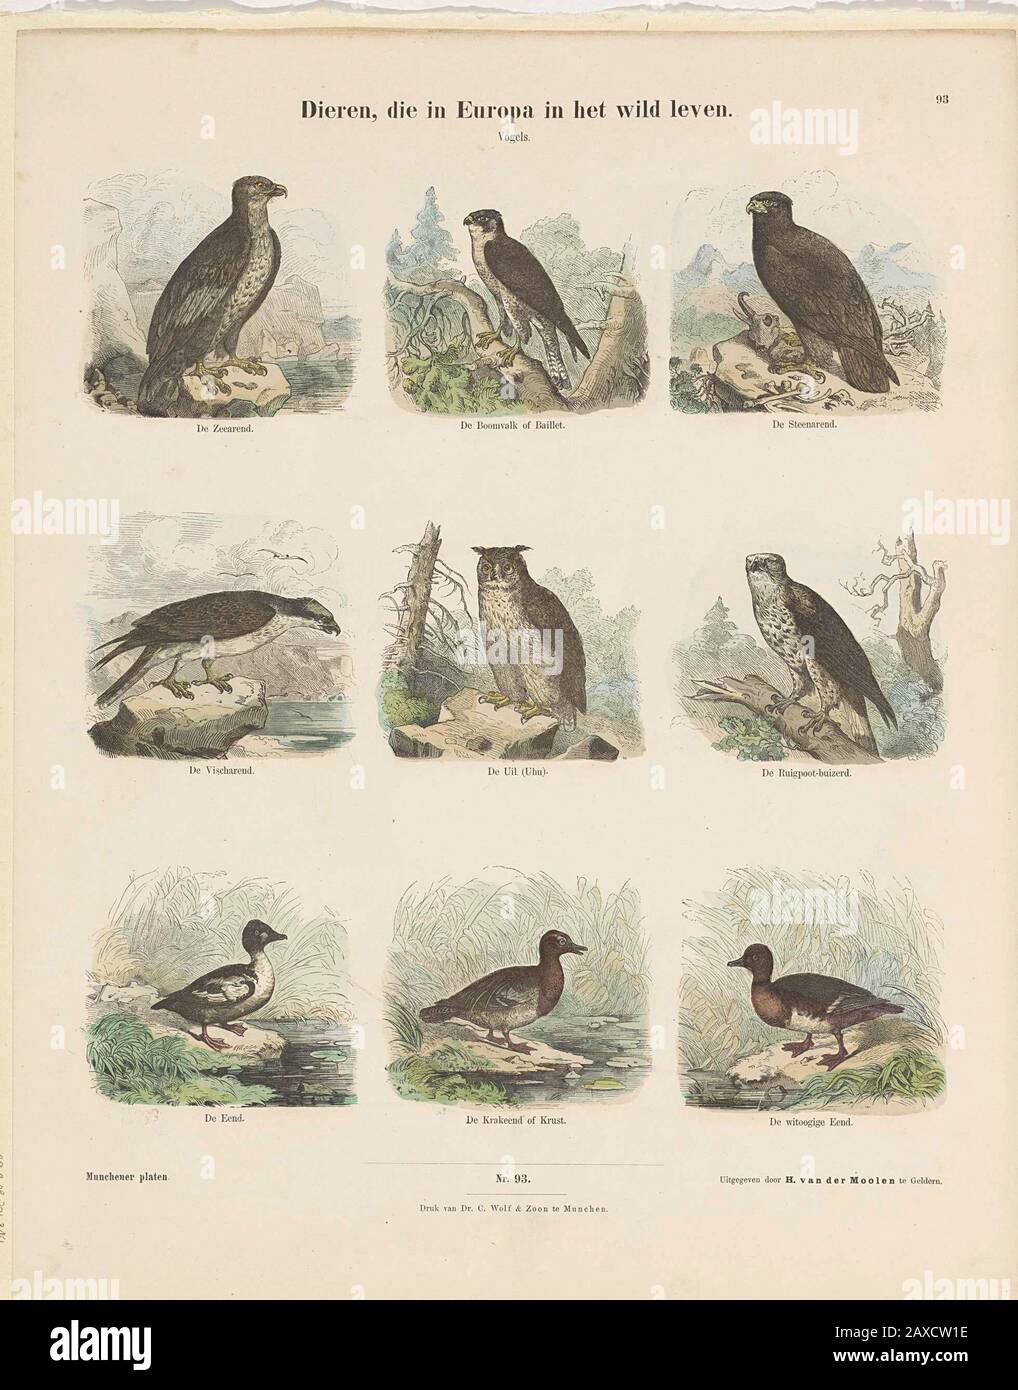 'Dieren, die in Europa in het wild leven; Blad met 9 voorstellingen van vogels, waaronder een zeearend, een steenarend, een uil en eenden. Onder de afbeeldingen een onderschrift. Genummerd midden onder: Nro. 93. Genummerd rechtsboven: 93.; Iconclasscode: 25F3; Iconclasscode: 25F33(EAGLE); Iconclasscode: 25F36(DUCK); Iconclasscode: 25F34; print; volksprent; 1843 - ca.1820; 1843 - ca.1820; ' Stock Photo